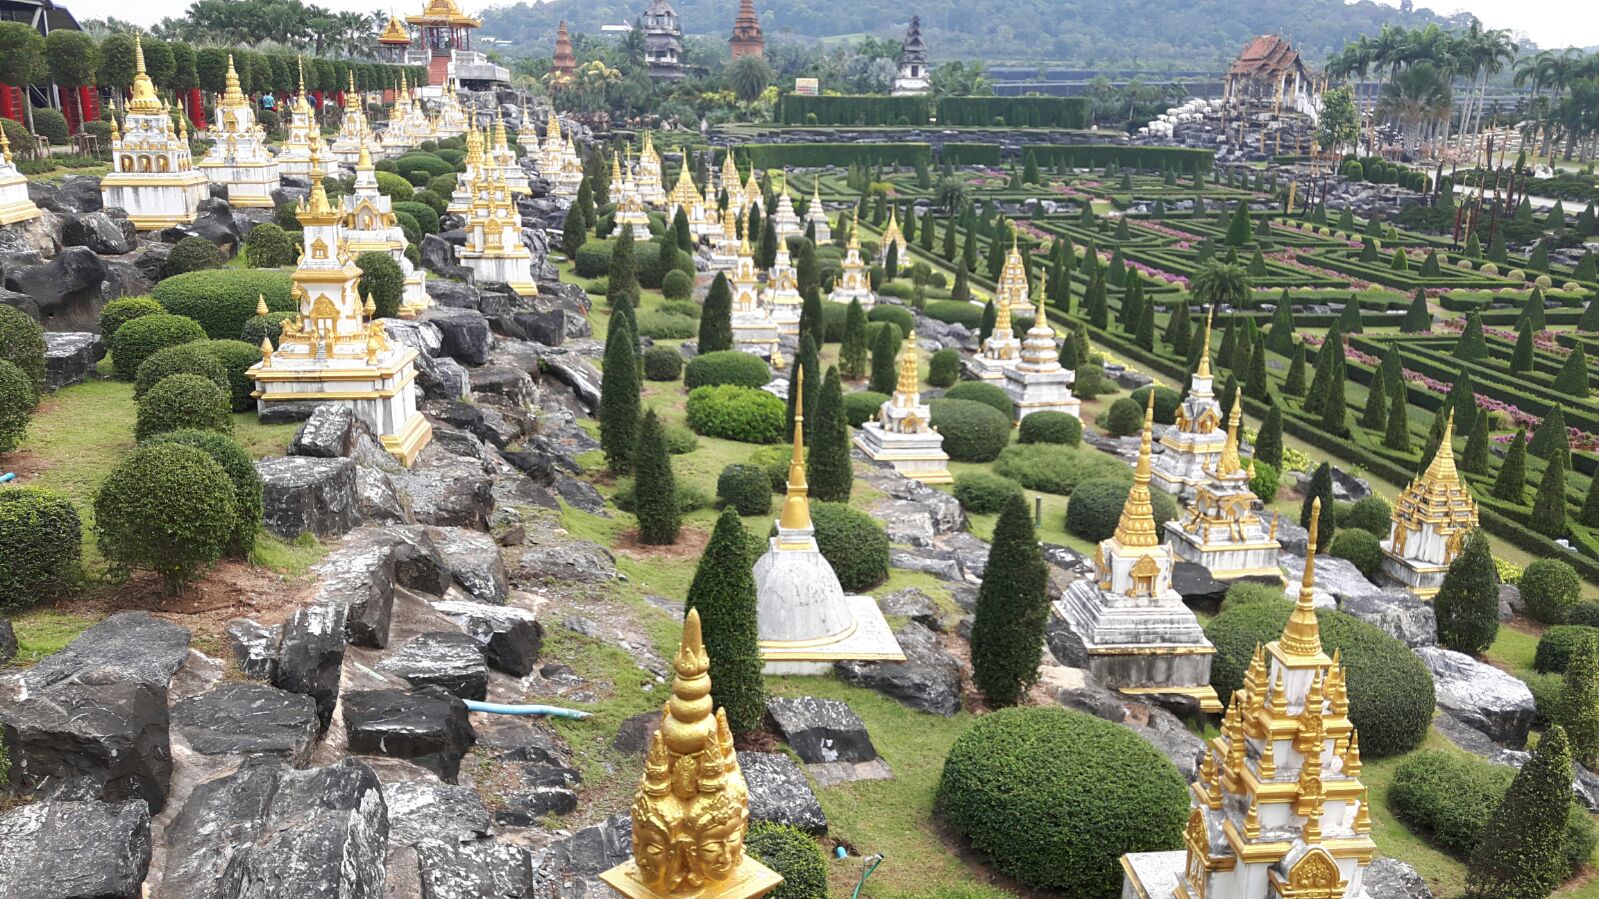 One Day Tour To Nongnuch Pattaya Garden : Thailand (Feb'18) 11